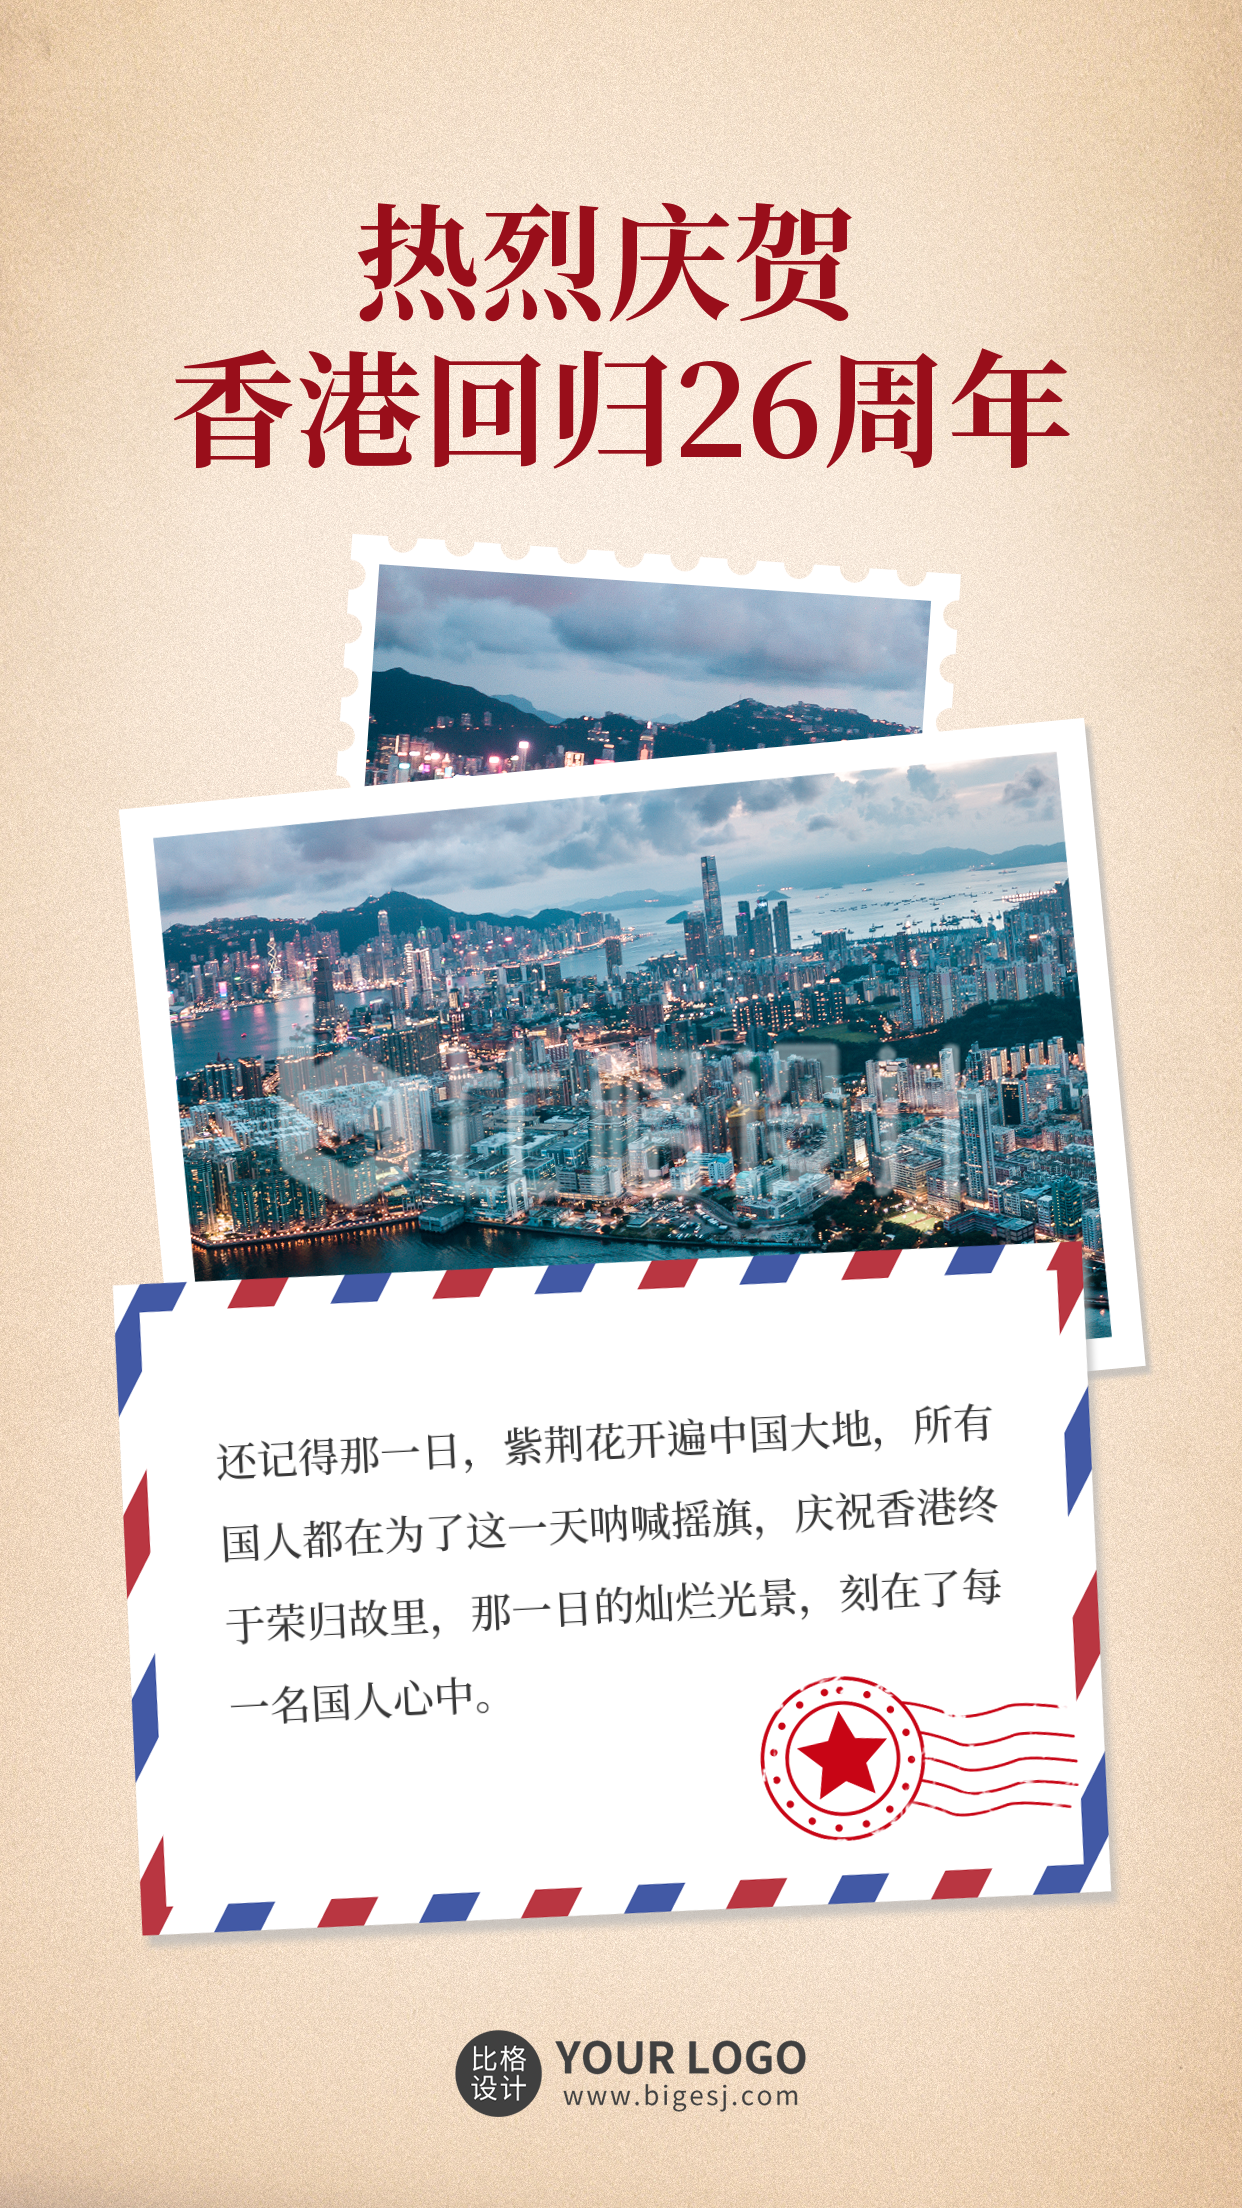 庆祝香港回归26周年手机海报